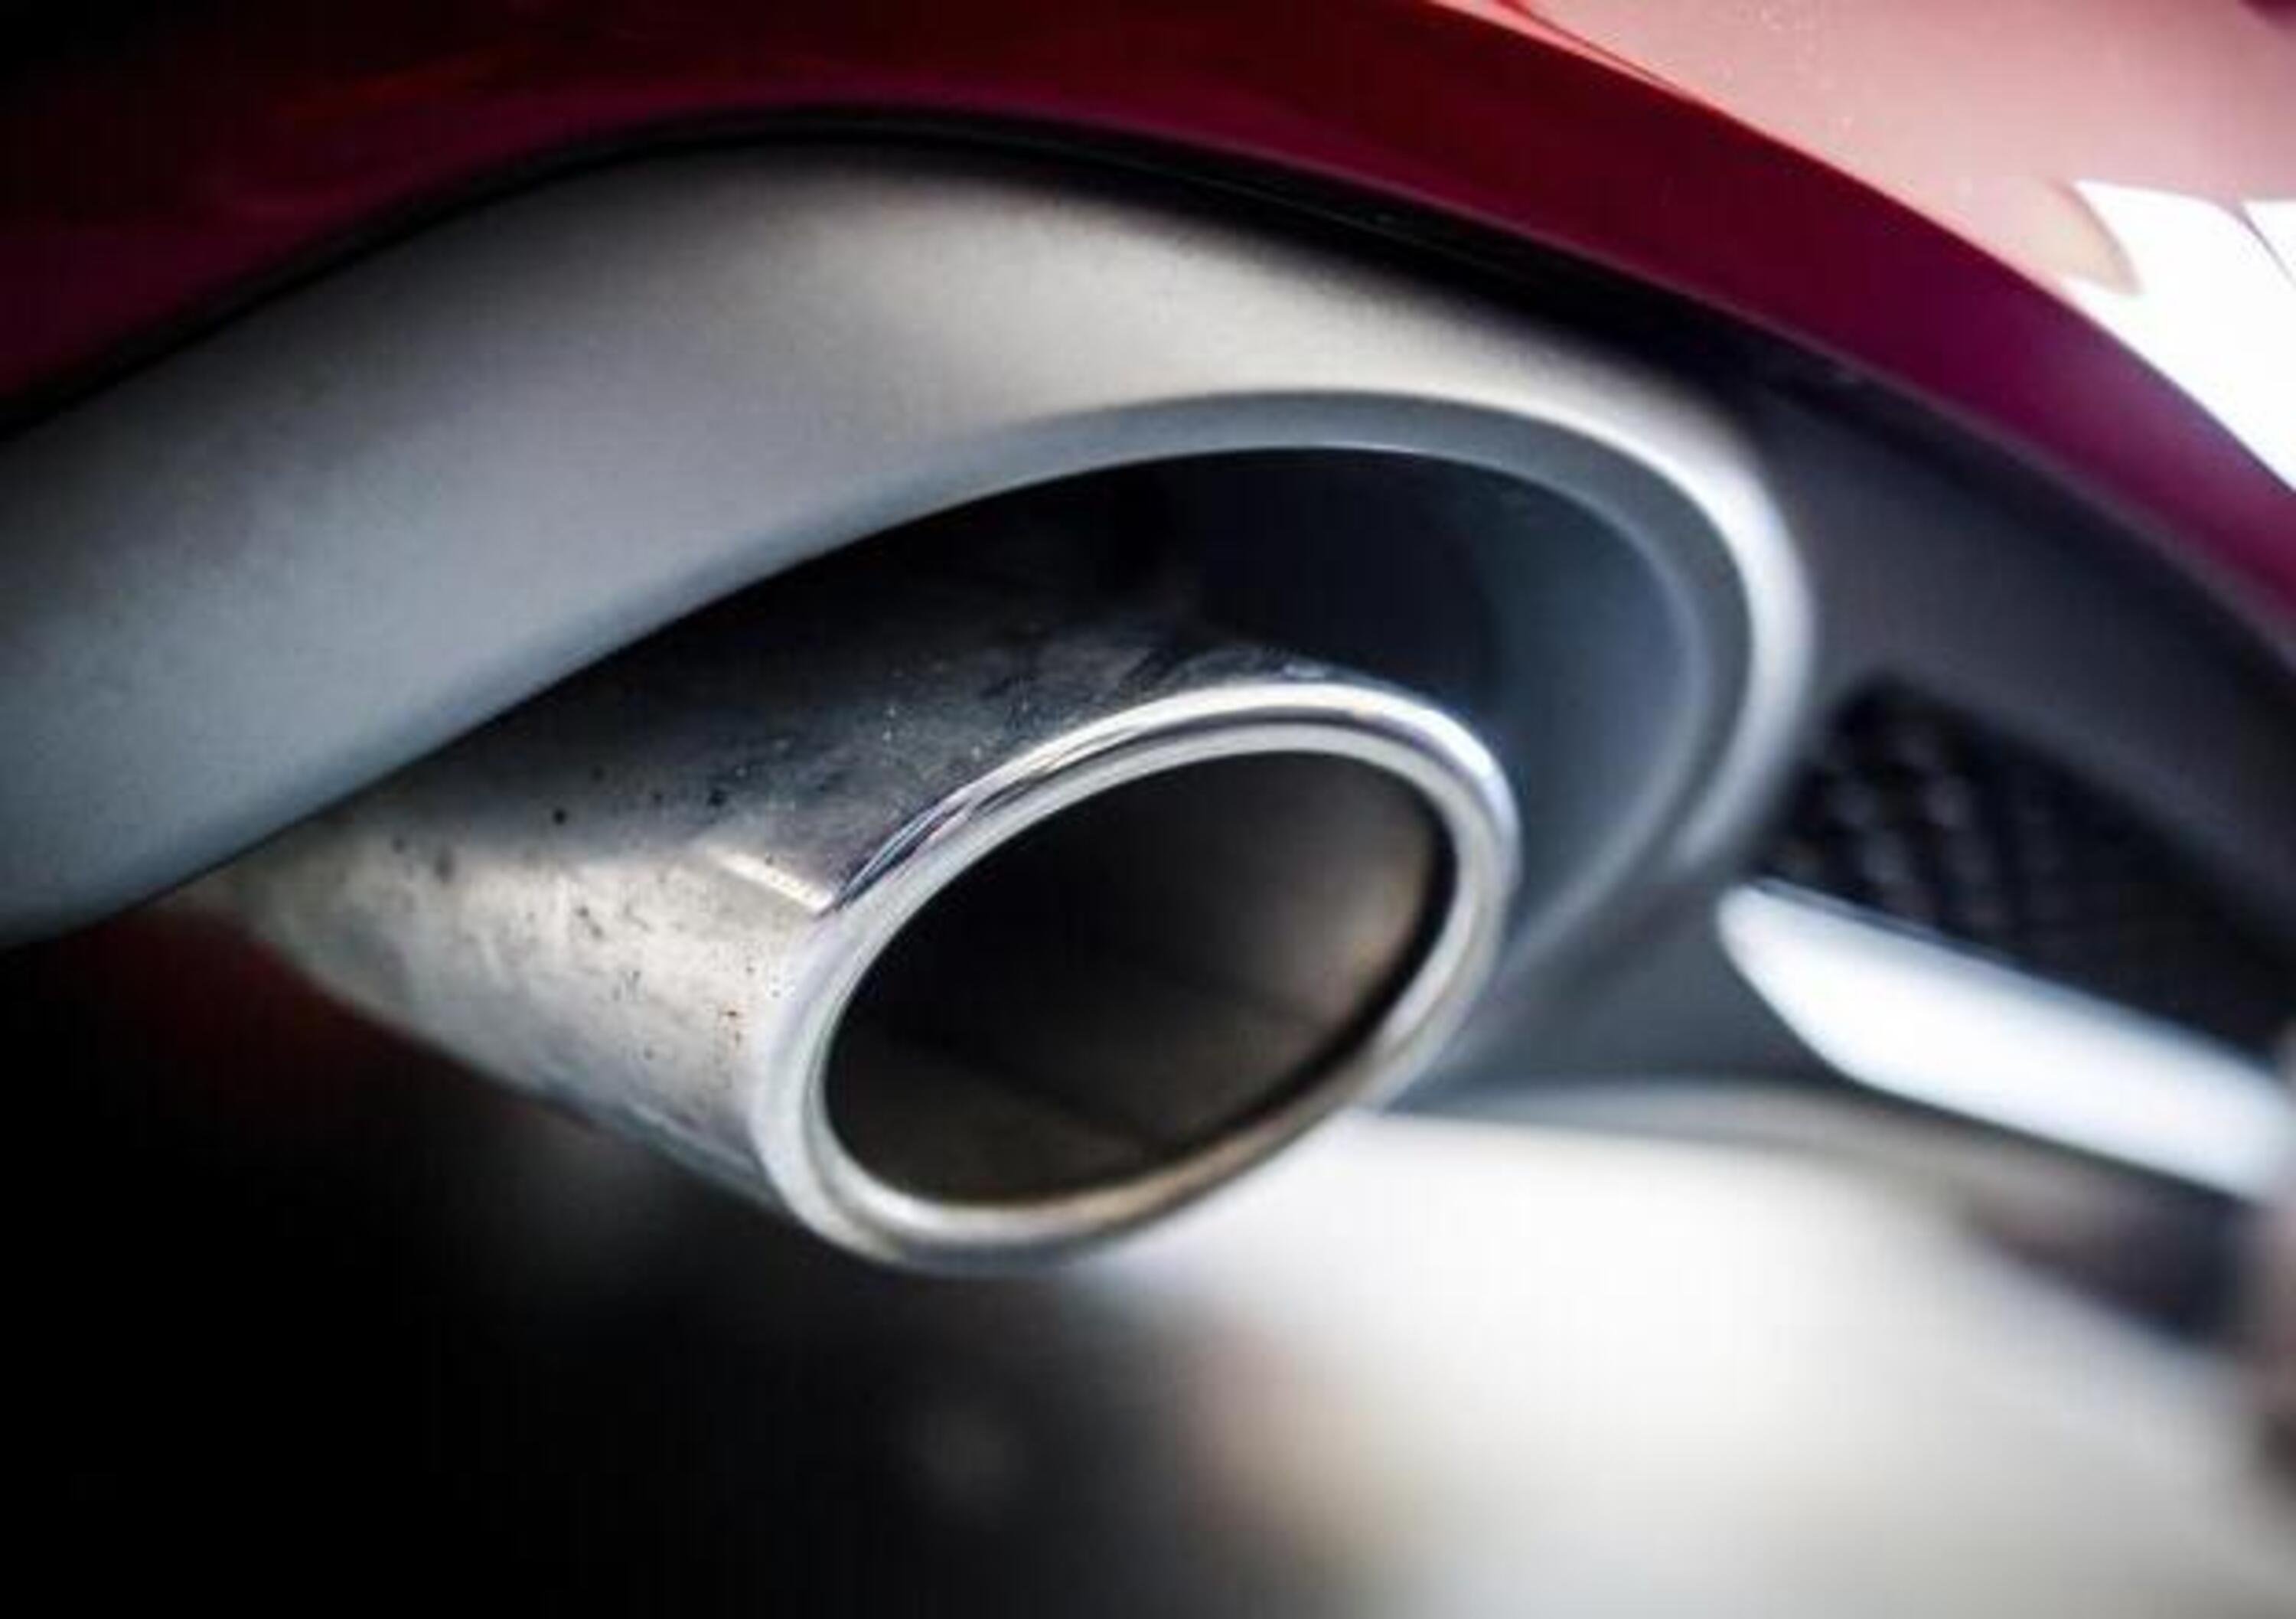 I motori a benzina producono pi&ugrave; PM10 dei diesel con FAP: lo rivela uno studio 